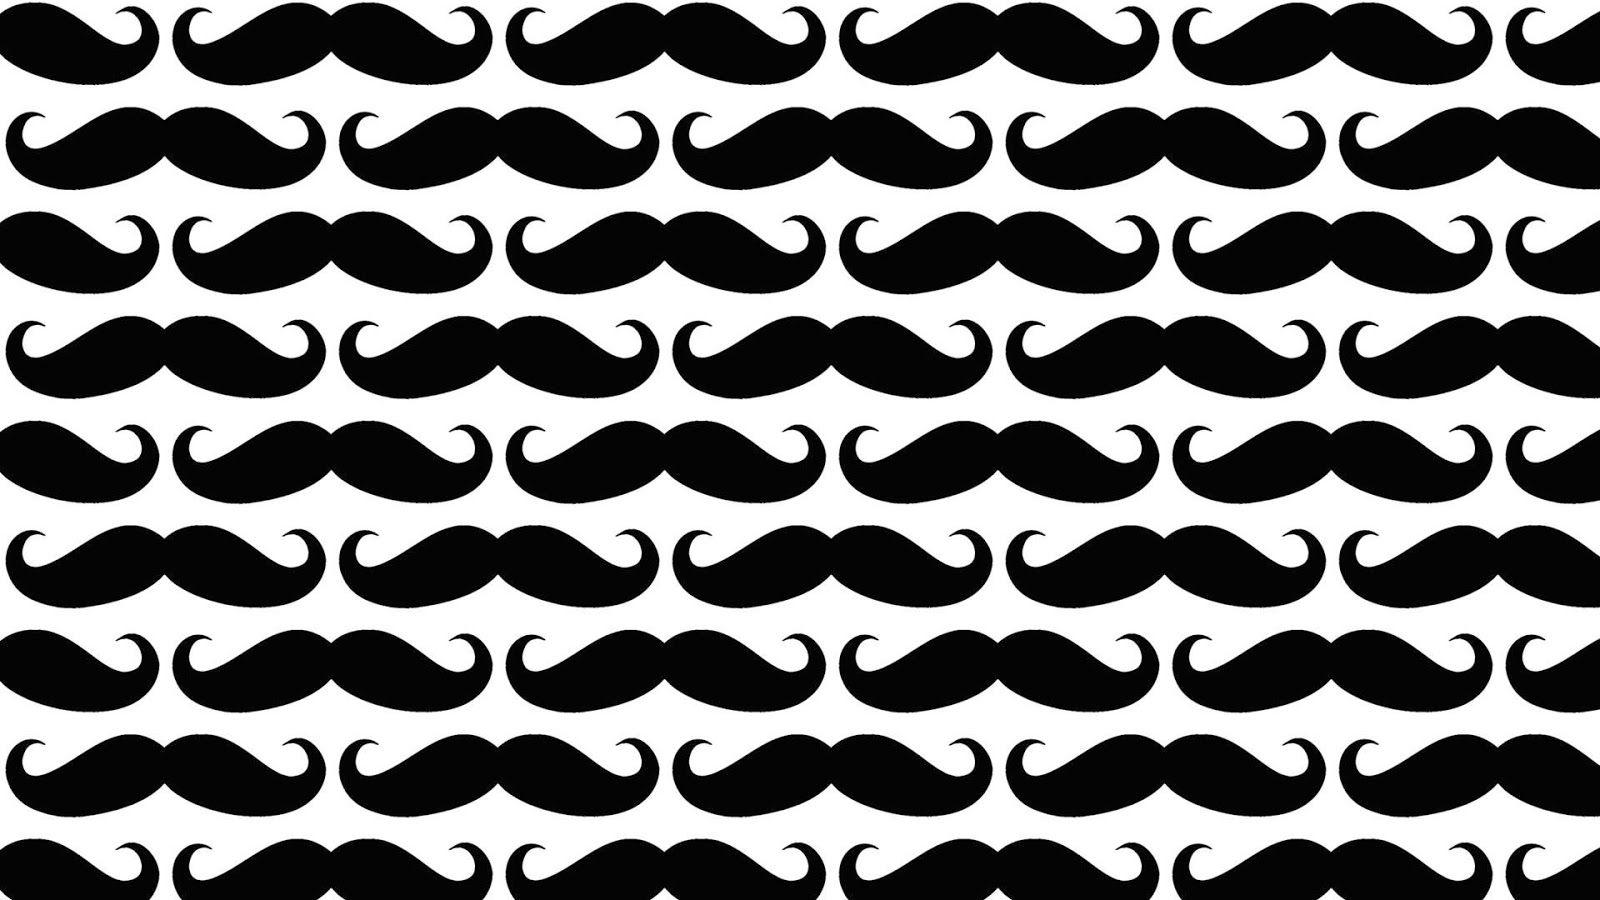 Mustache Wallpaper, DeskK High Resolution Wallpaper